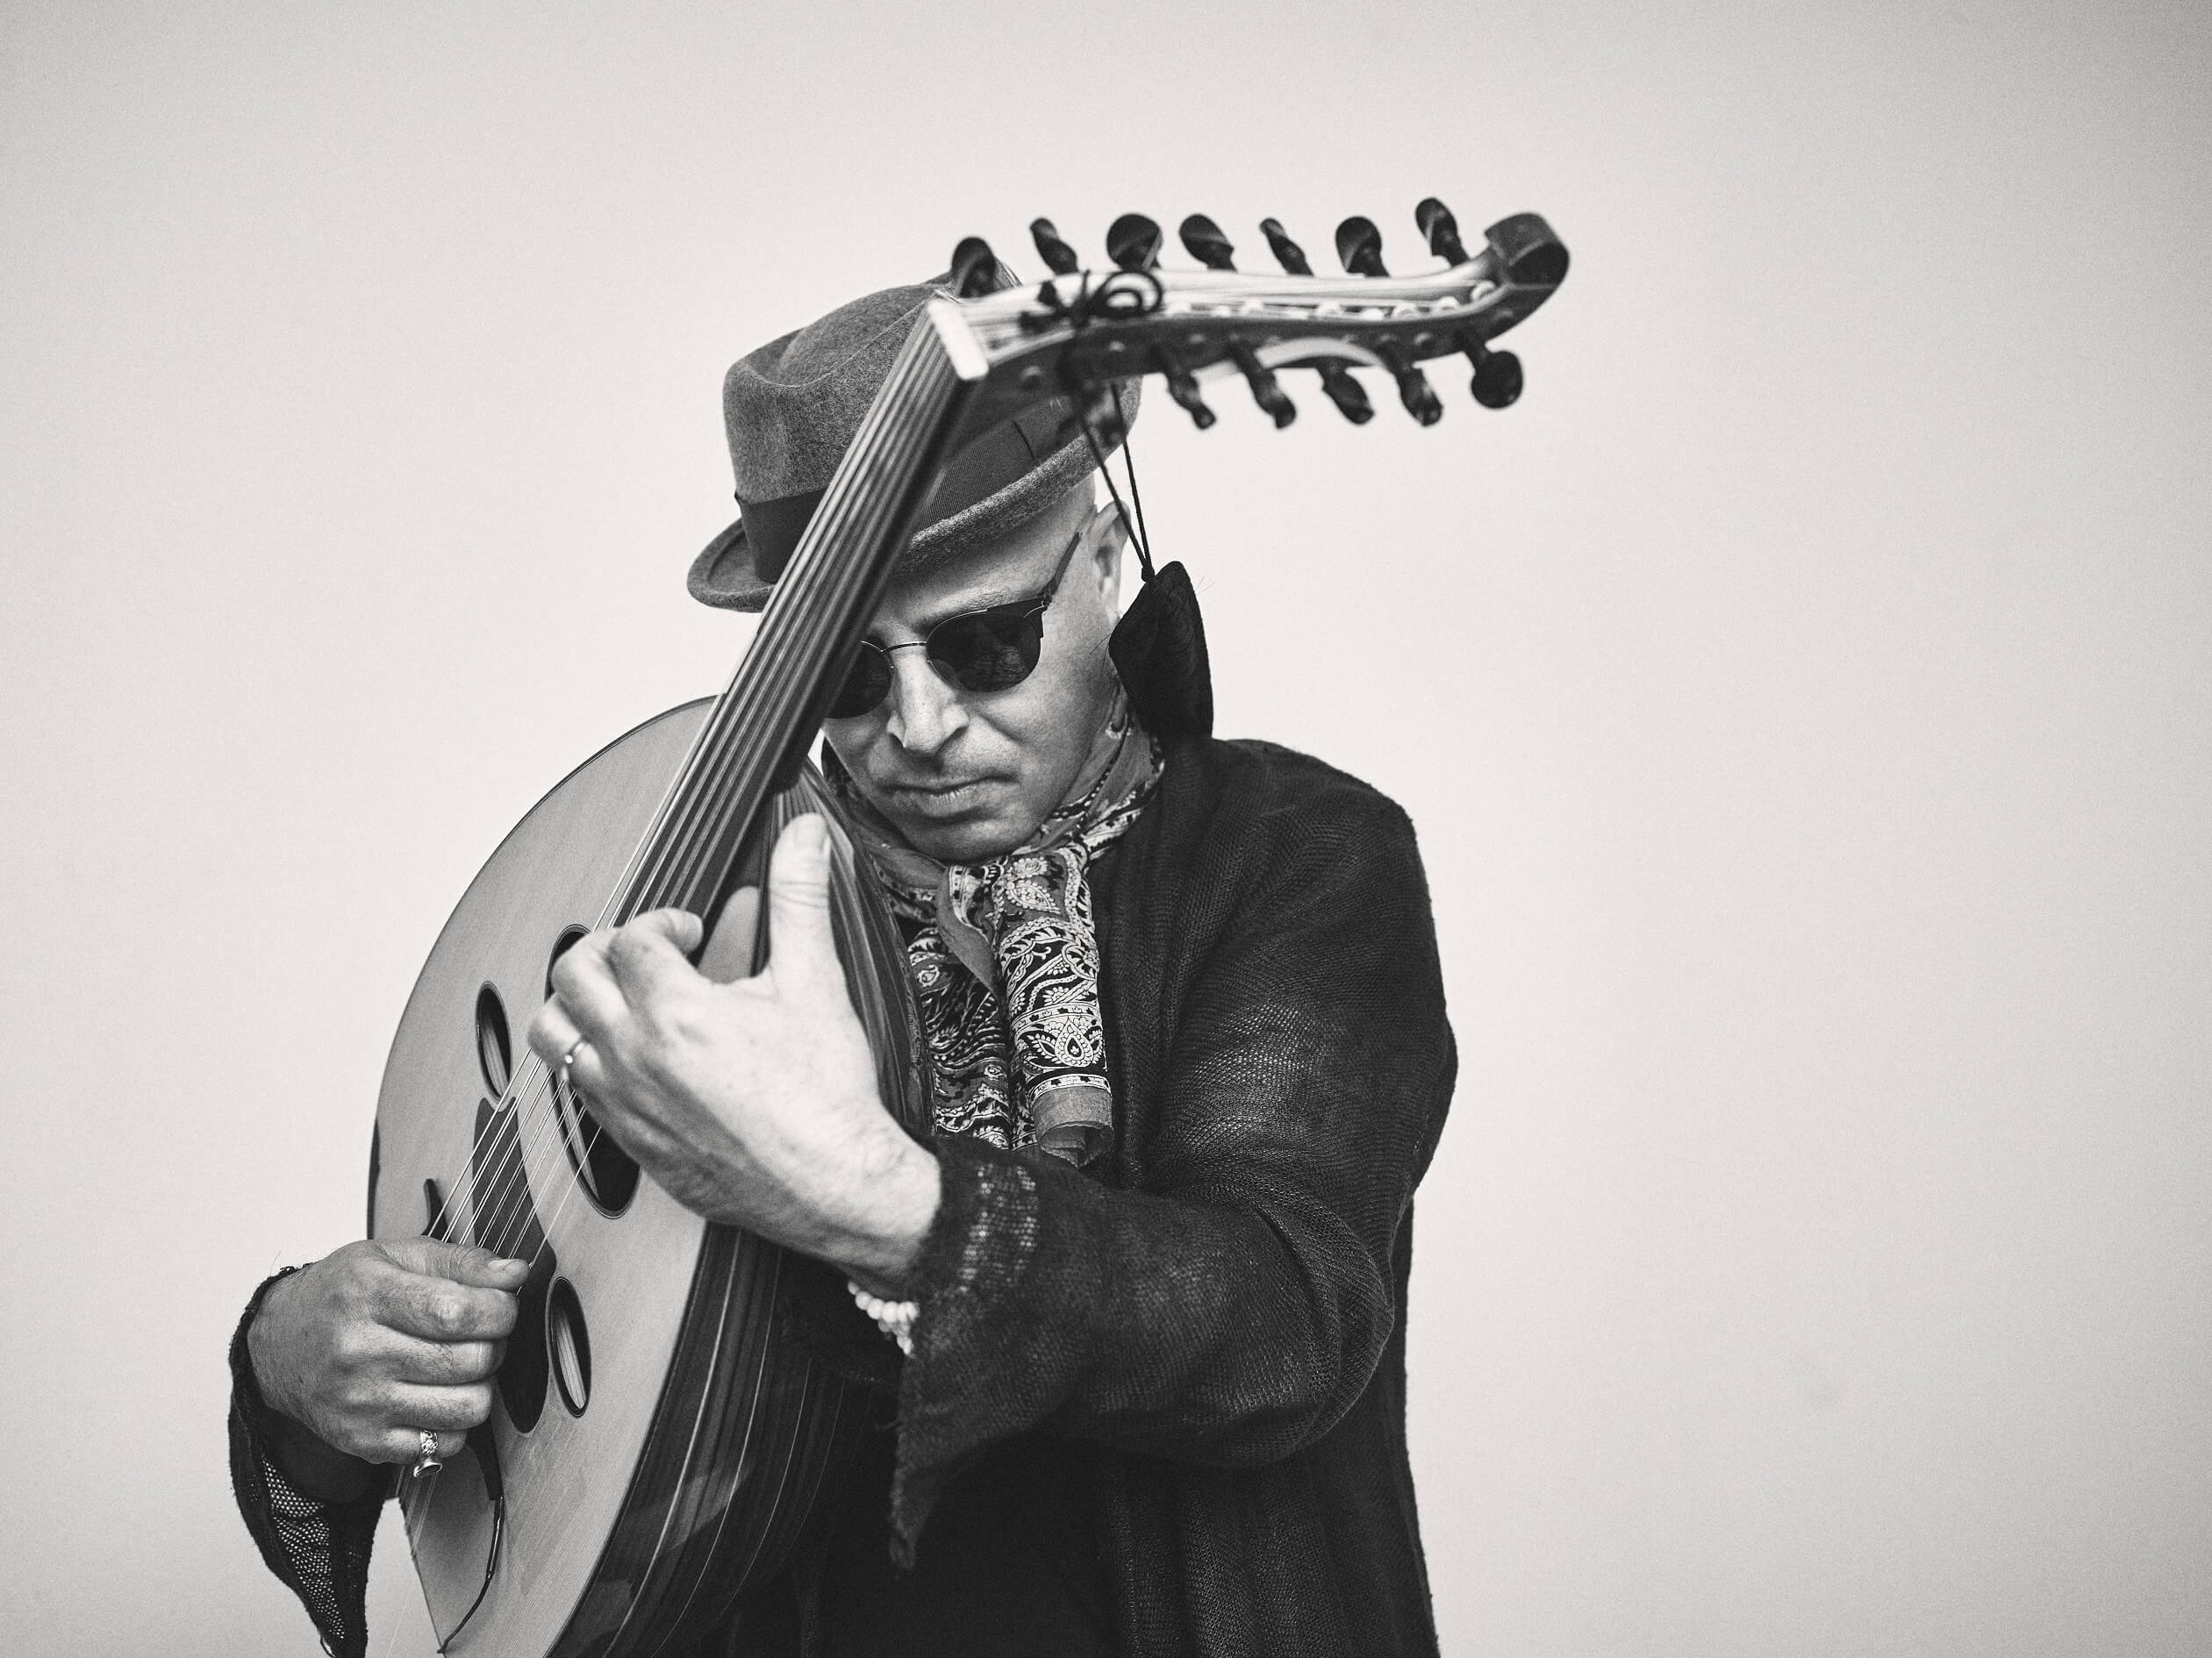 Lenda viva da música tunisina Dhafer Youssef estreia álbum “Sounds of Mirrors” em Portugal, no Theatro Circo